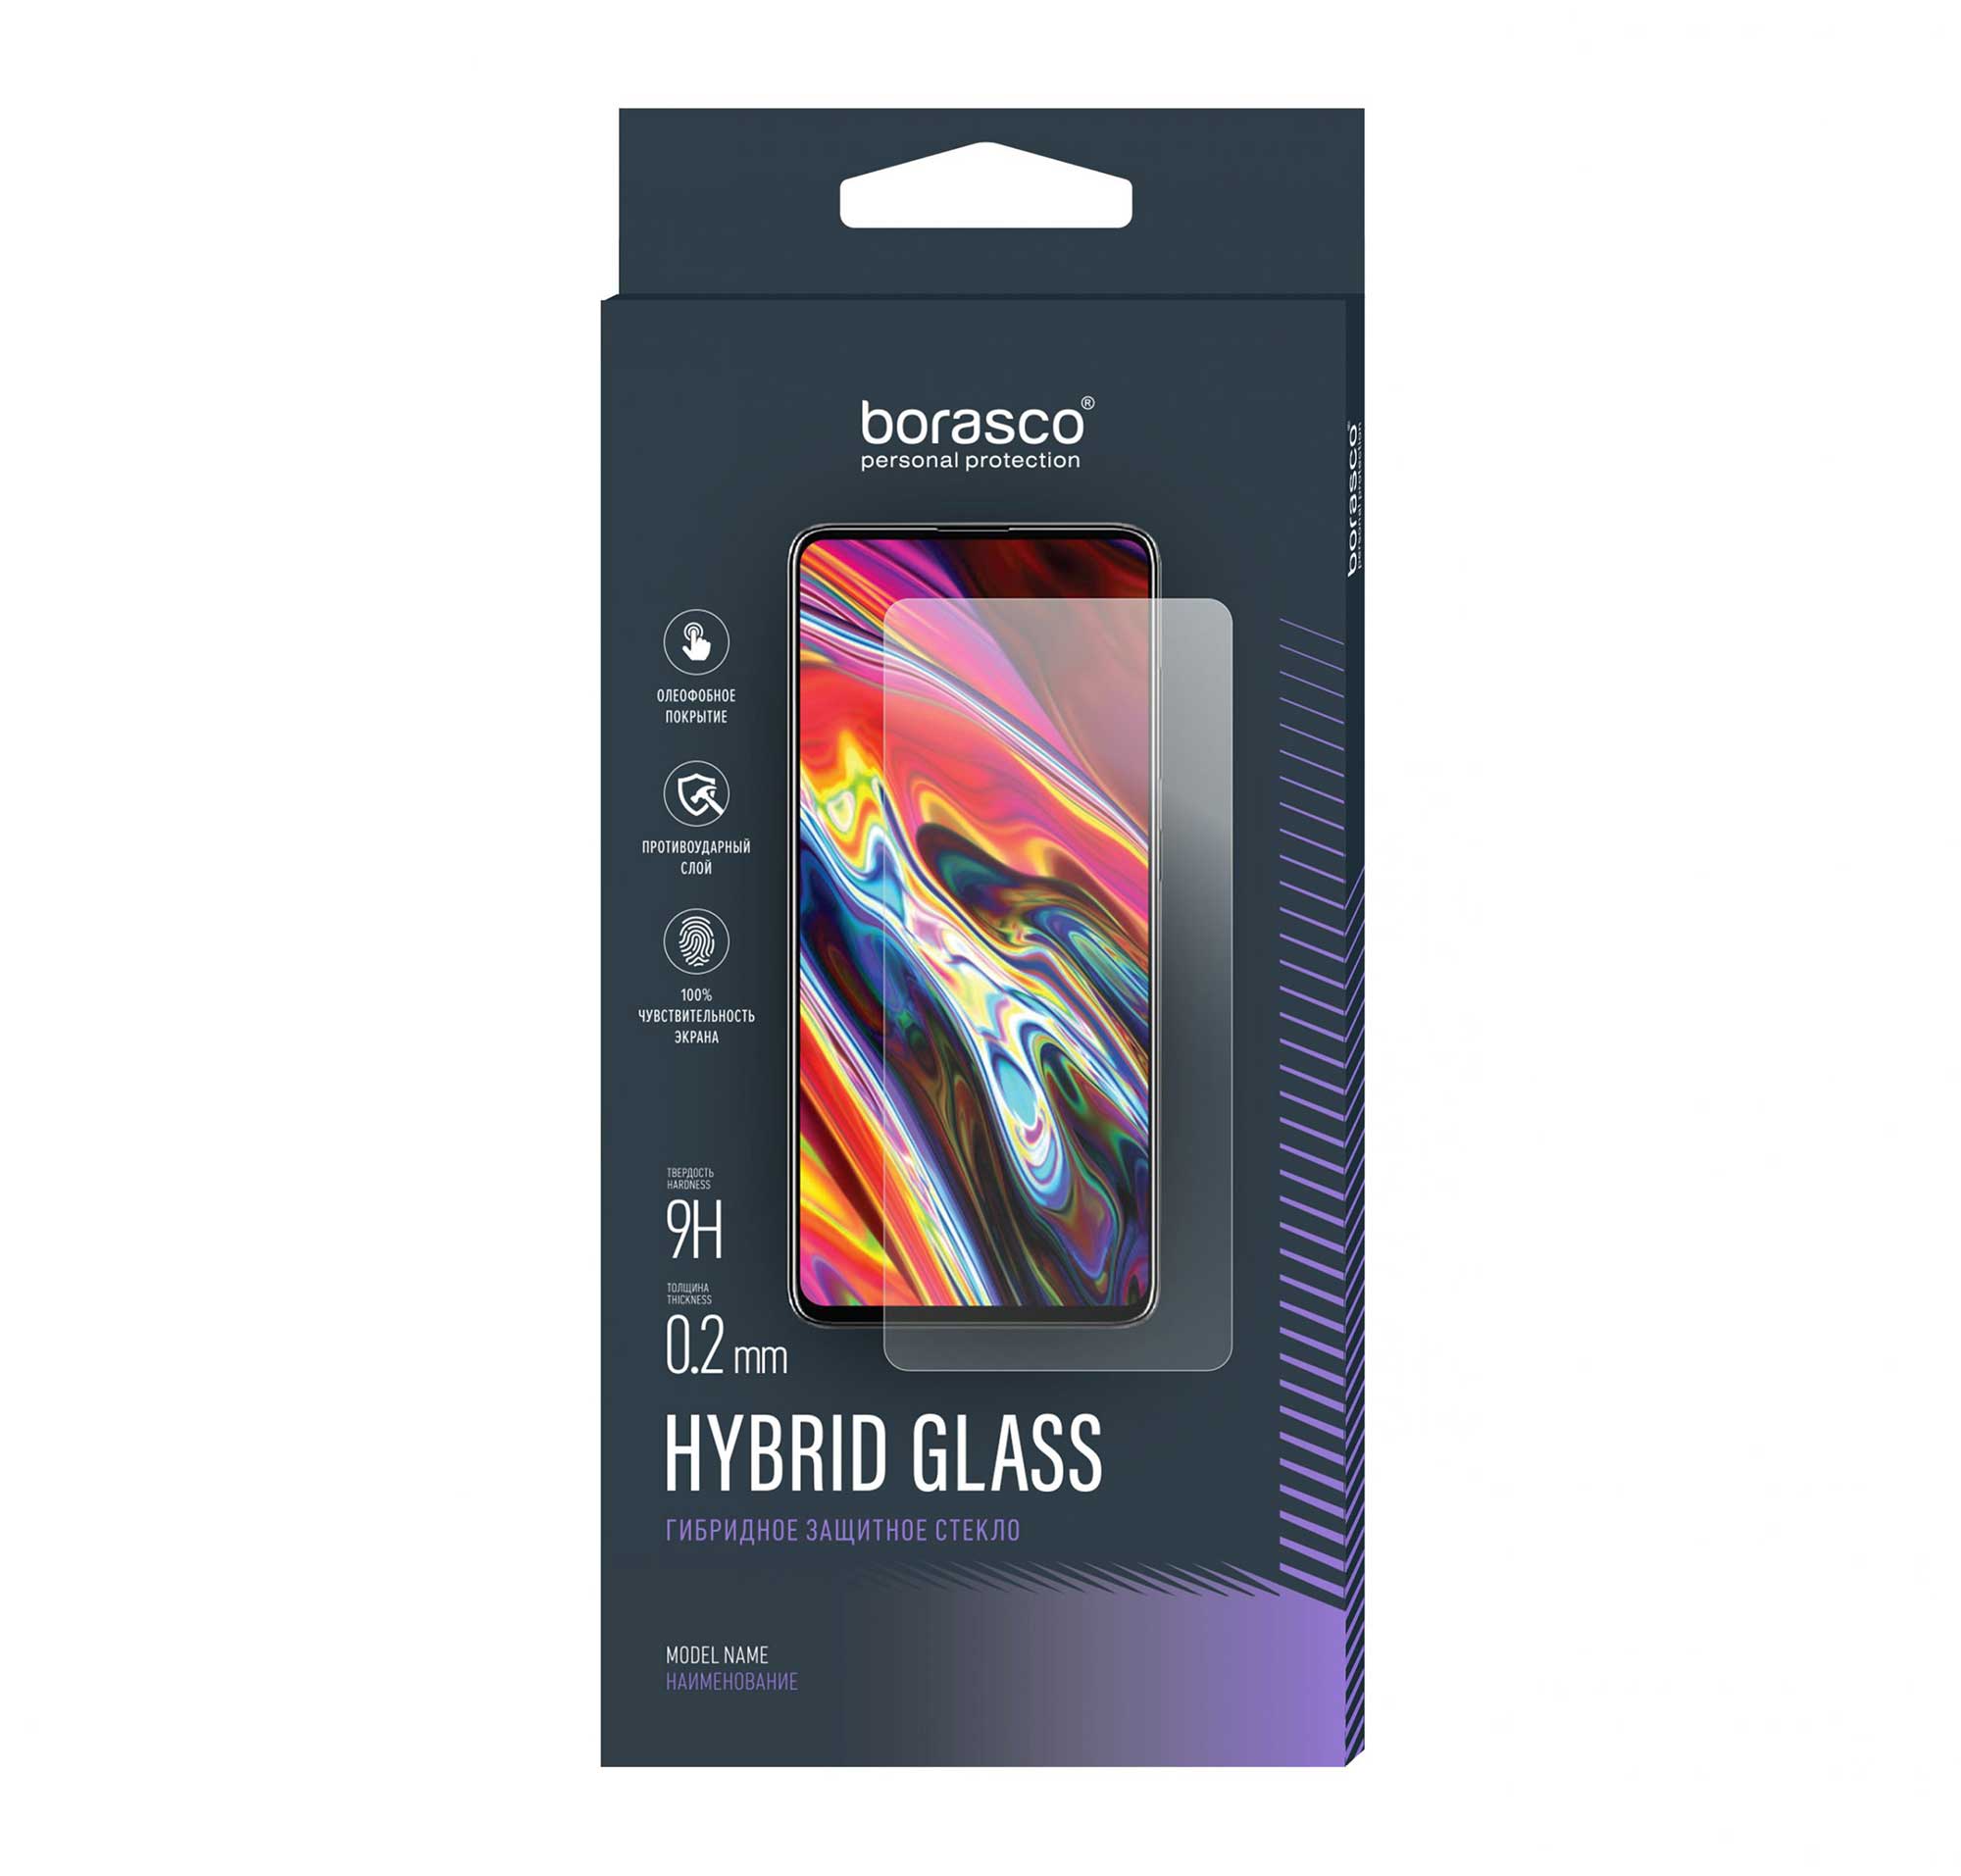 Защитное стекло Hybrid Glass для Tecno Spark 5 Air/ Pouvoir 4 защитное стекло interstep nokia 3 4 5 4